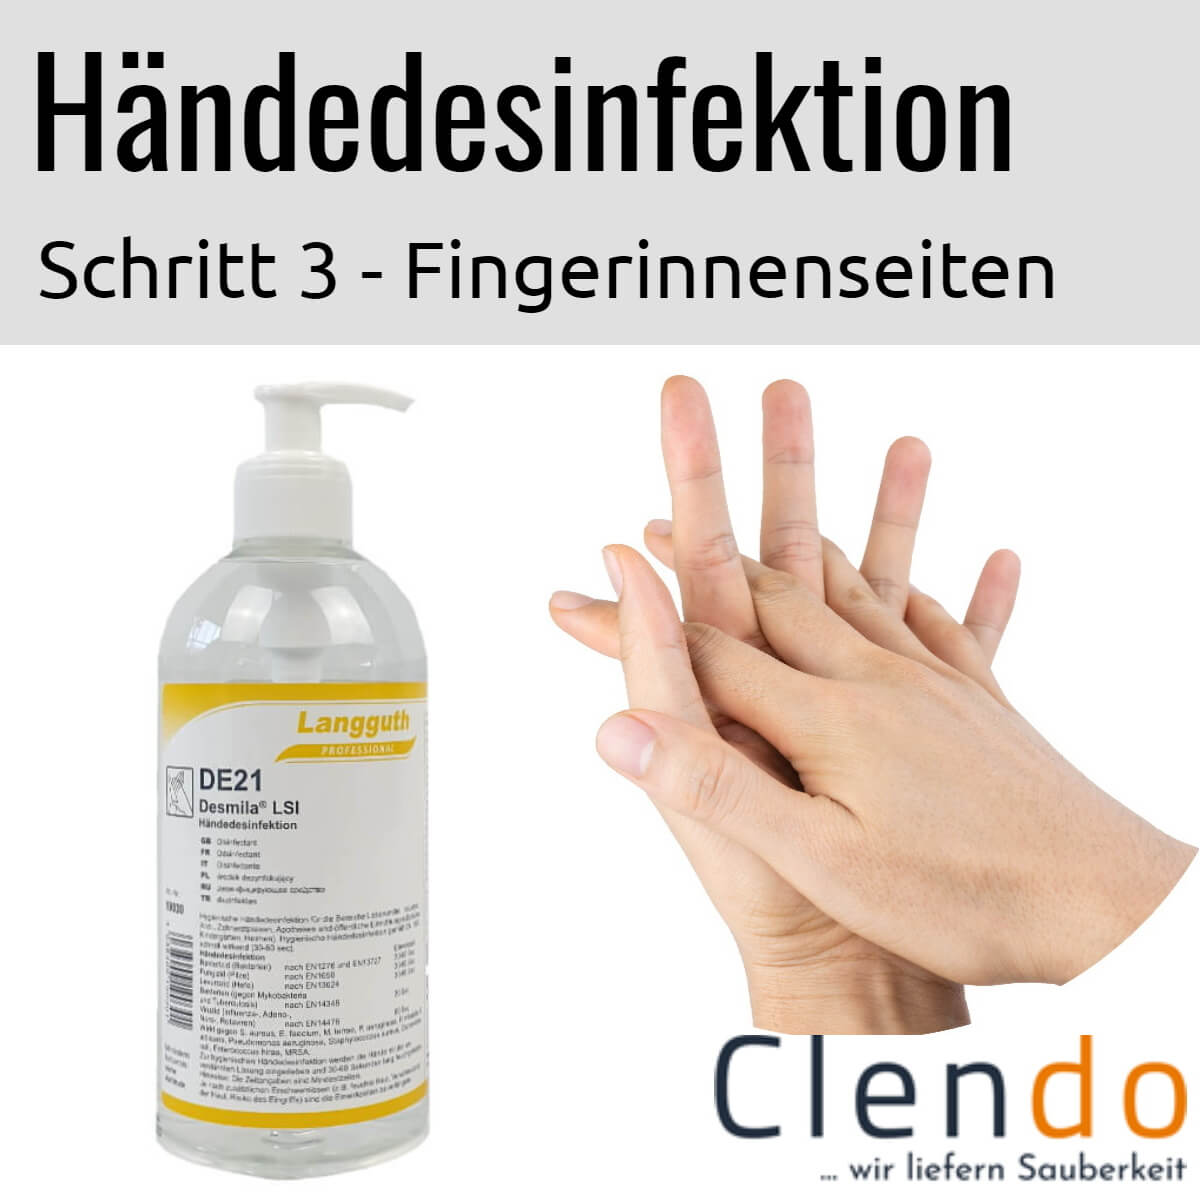 Languth Desmila LSI Händedesinfektion DE21 Fingerzwischenräume desinfizieren